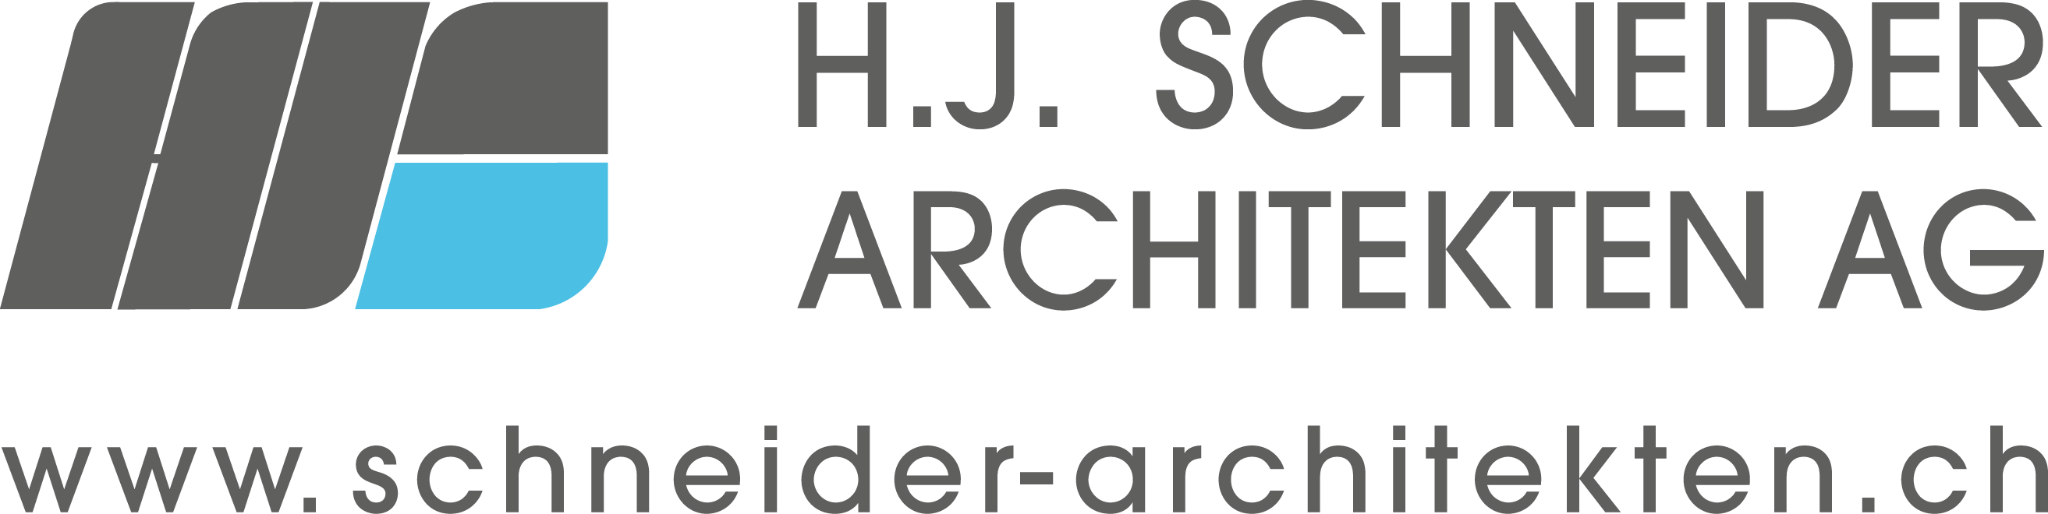 H.J. Schneider Architekten AG